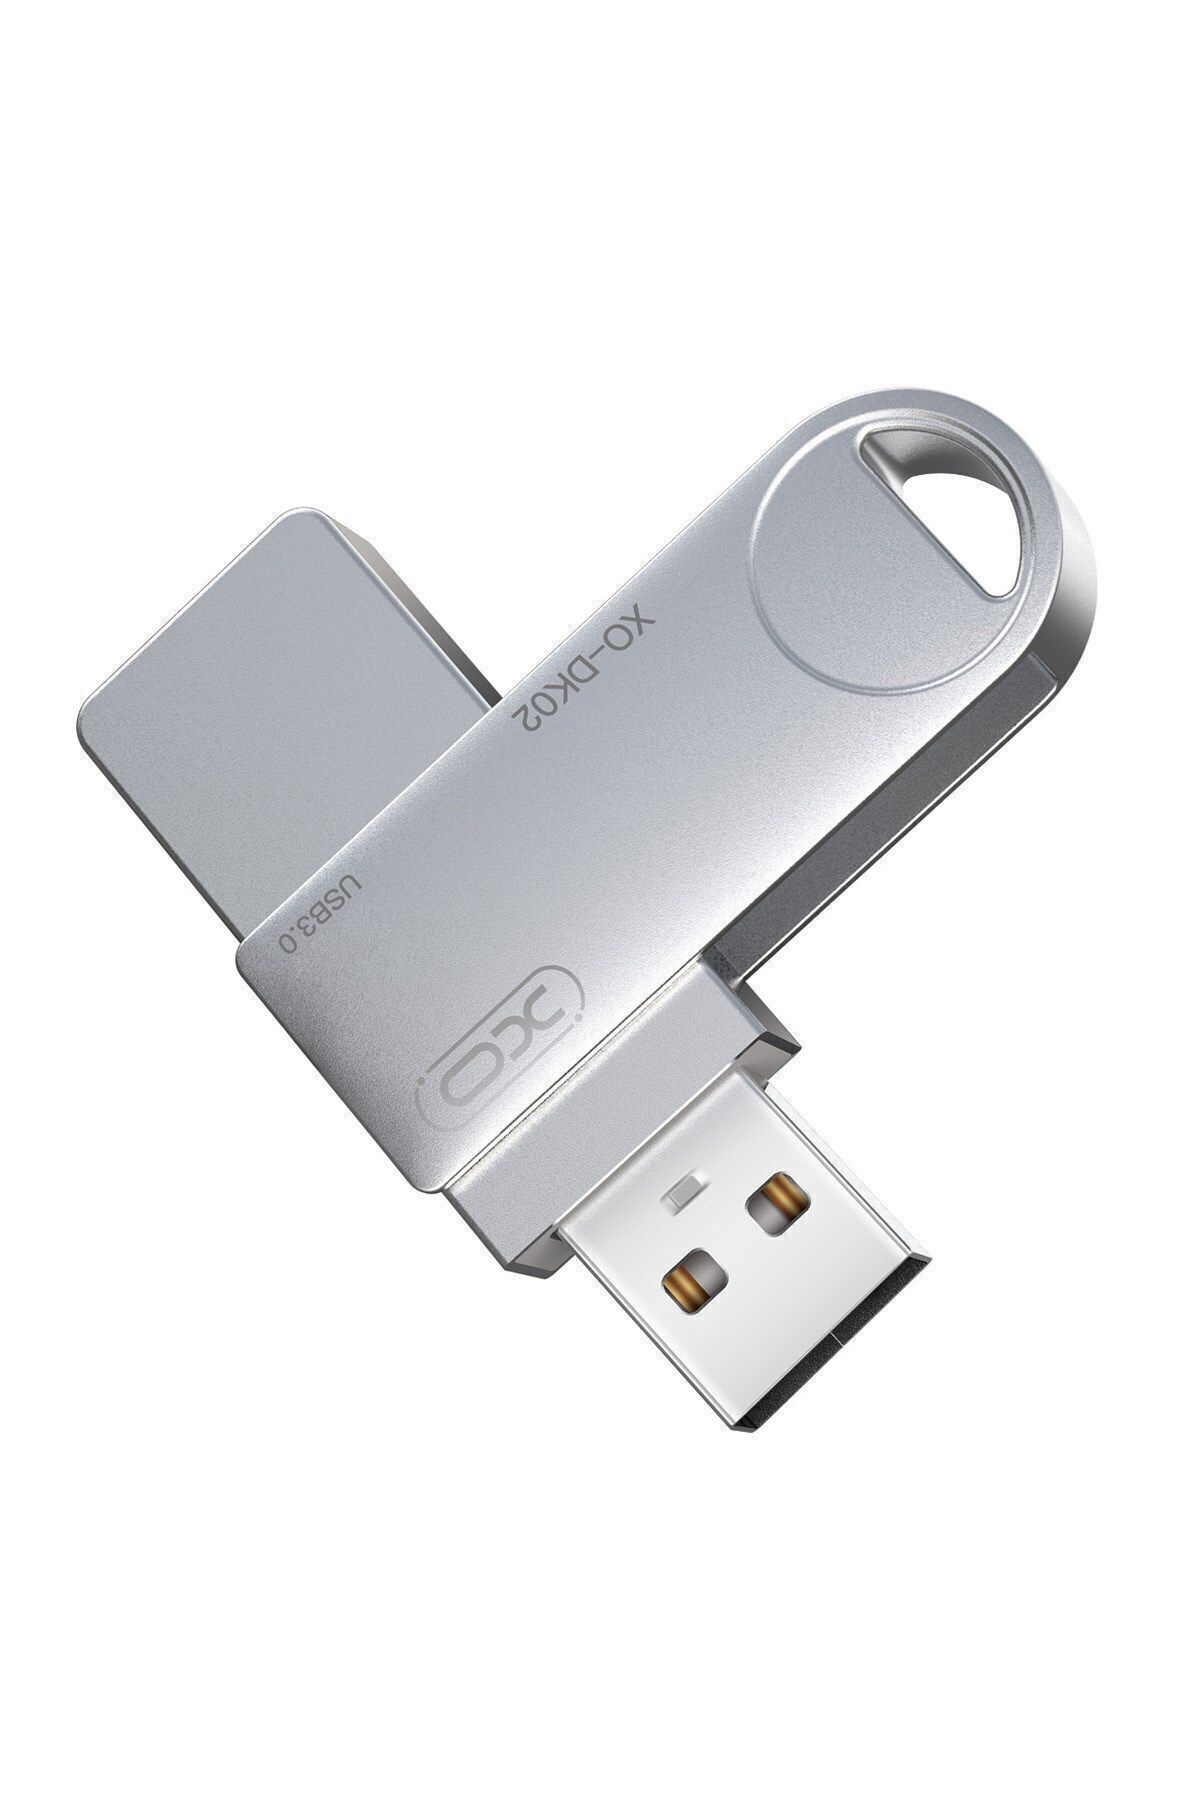 Xo -DK02 16 GB Metal Gövdeli Koruyucu Tasarım USB Bellek Flash Disk